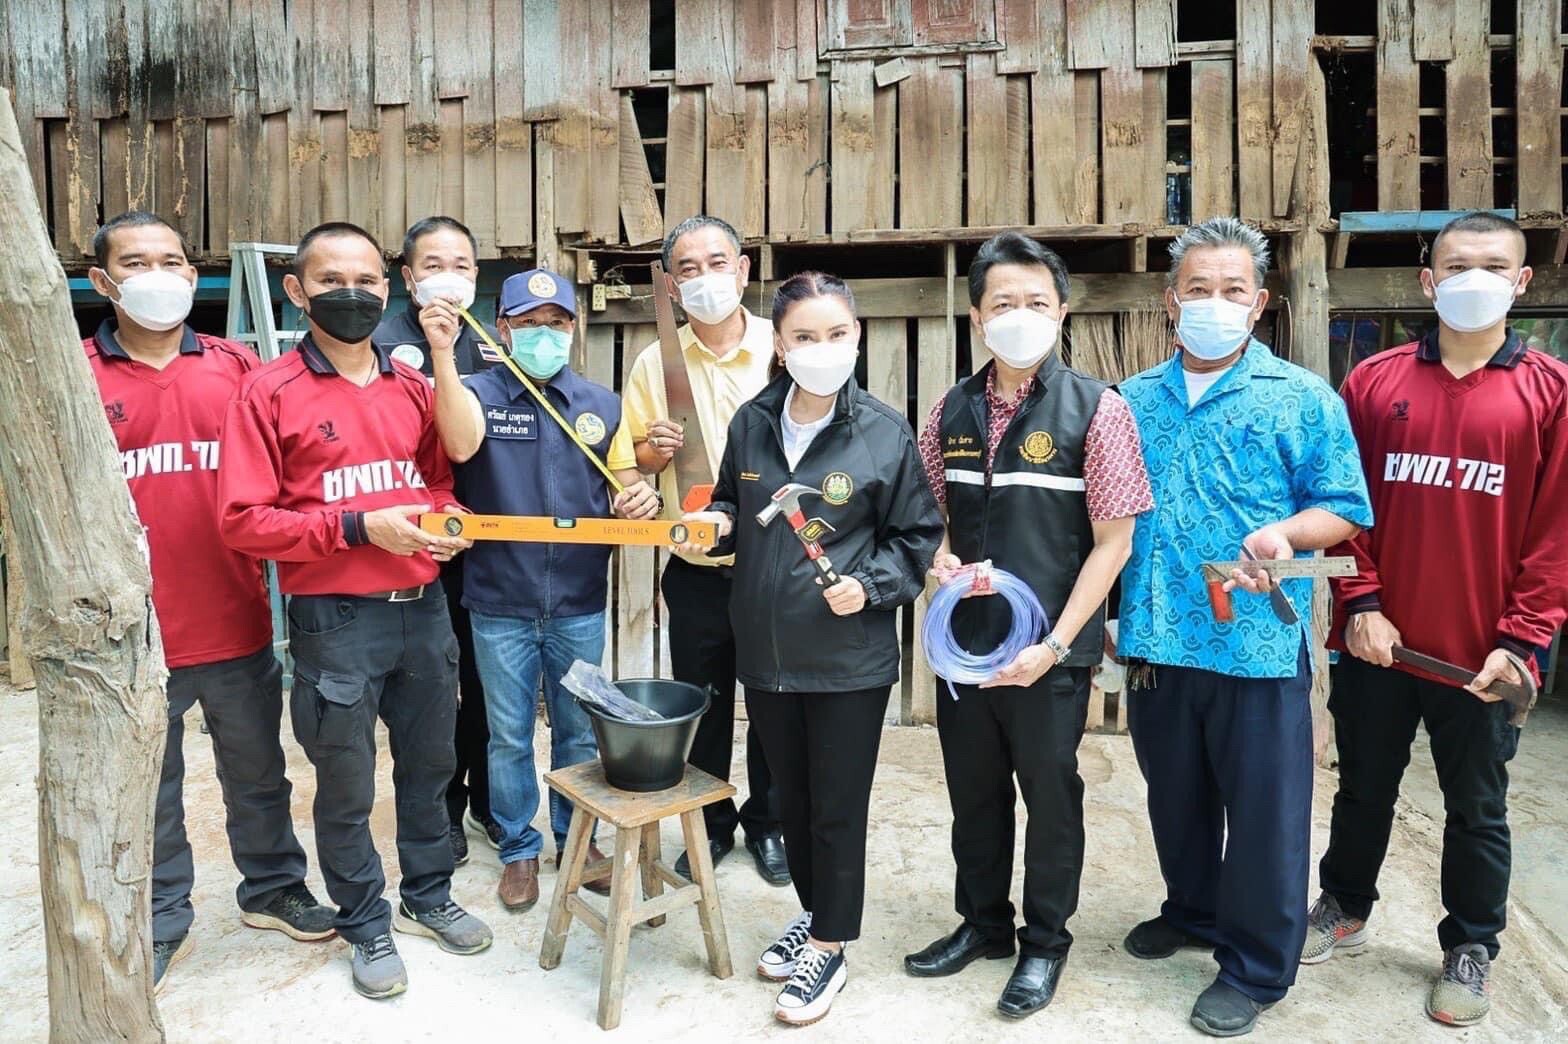 สำนักงานพัฒนาฝีมือแรงงานเพชรบุรี ร่วมบูรณาการกับหน่วยงานต่างๆ ในพื้นที่ จัดฝึกอบรมหลักสูตร "ช่างไม้ก่อสร้าง" ระหว่างวันที่ 4-8 กรกฎาคม 65